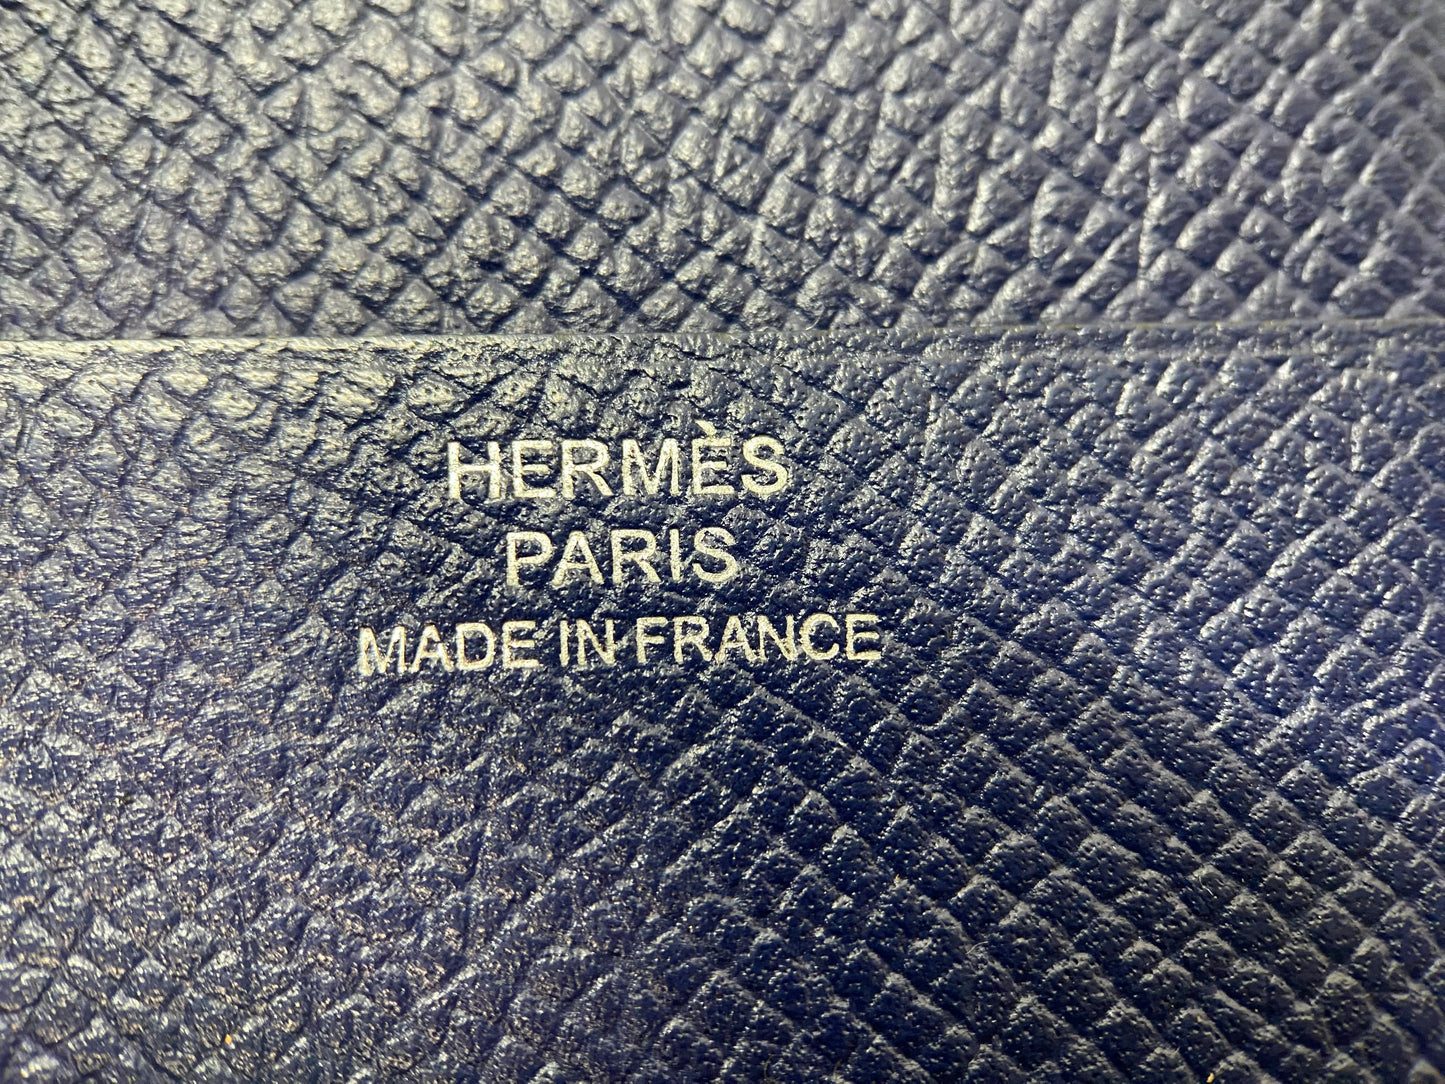 Hermès Hermès Smart Classic Notebook Case